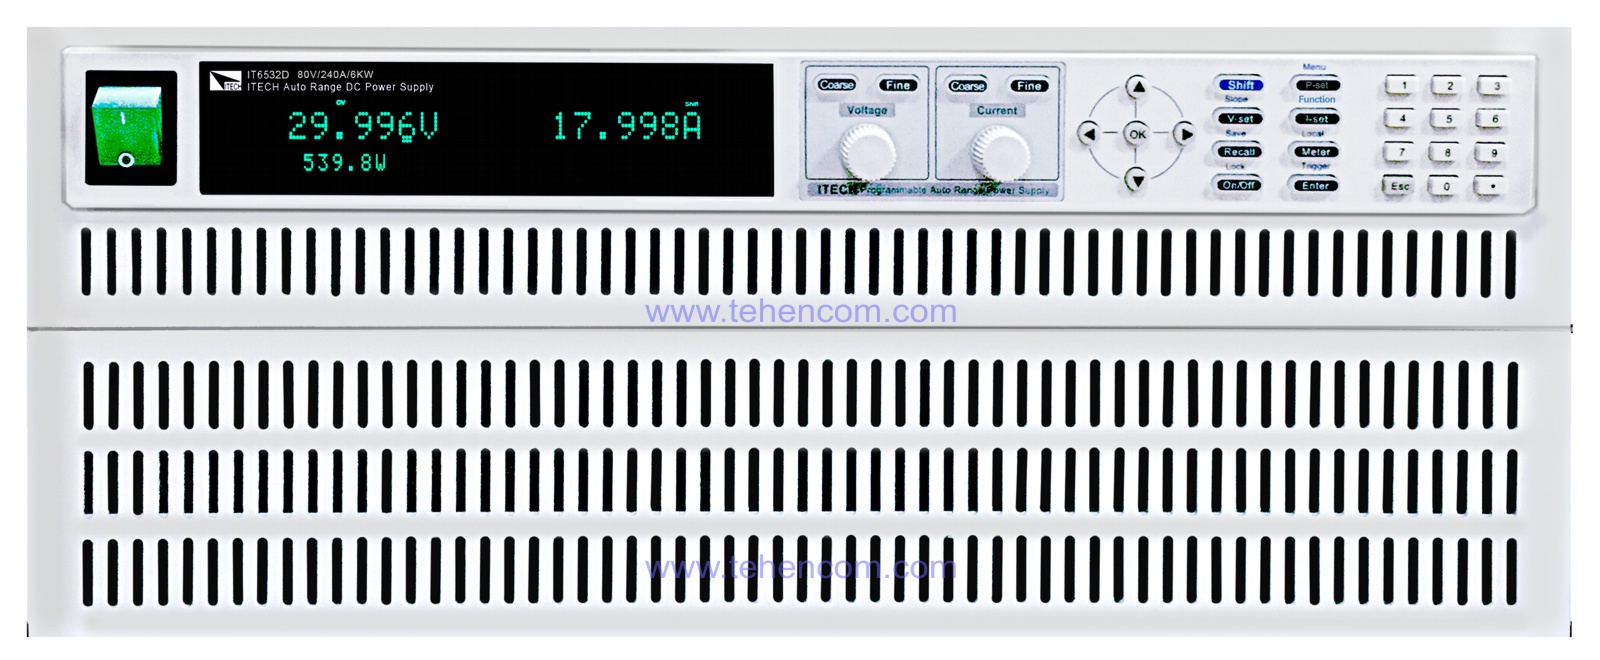 Модель IT6532D с максимальной выходной мощностью 6 кВт, которая состоит из двух модулей: трёхкиловаттного модуля генерации и управления (сверху) и трёхкиловаттного модуля увеличения мощности (внизу)